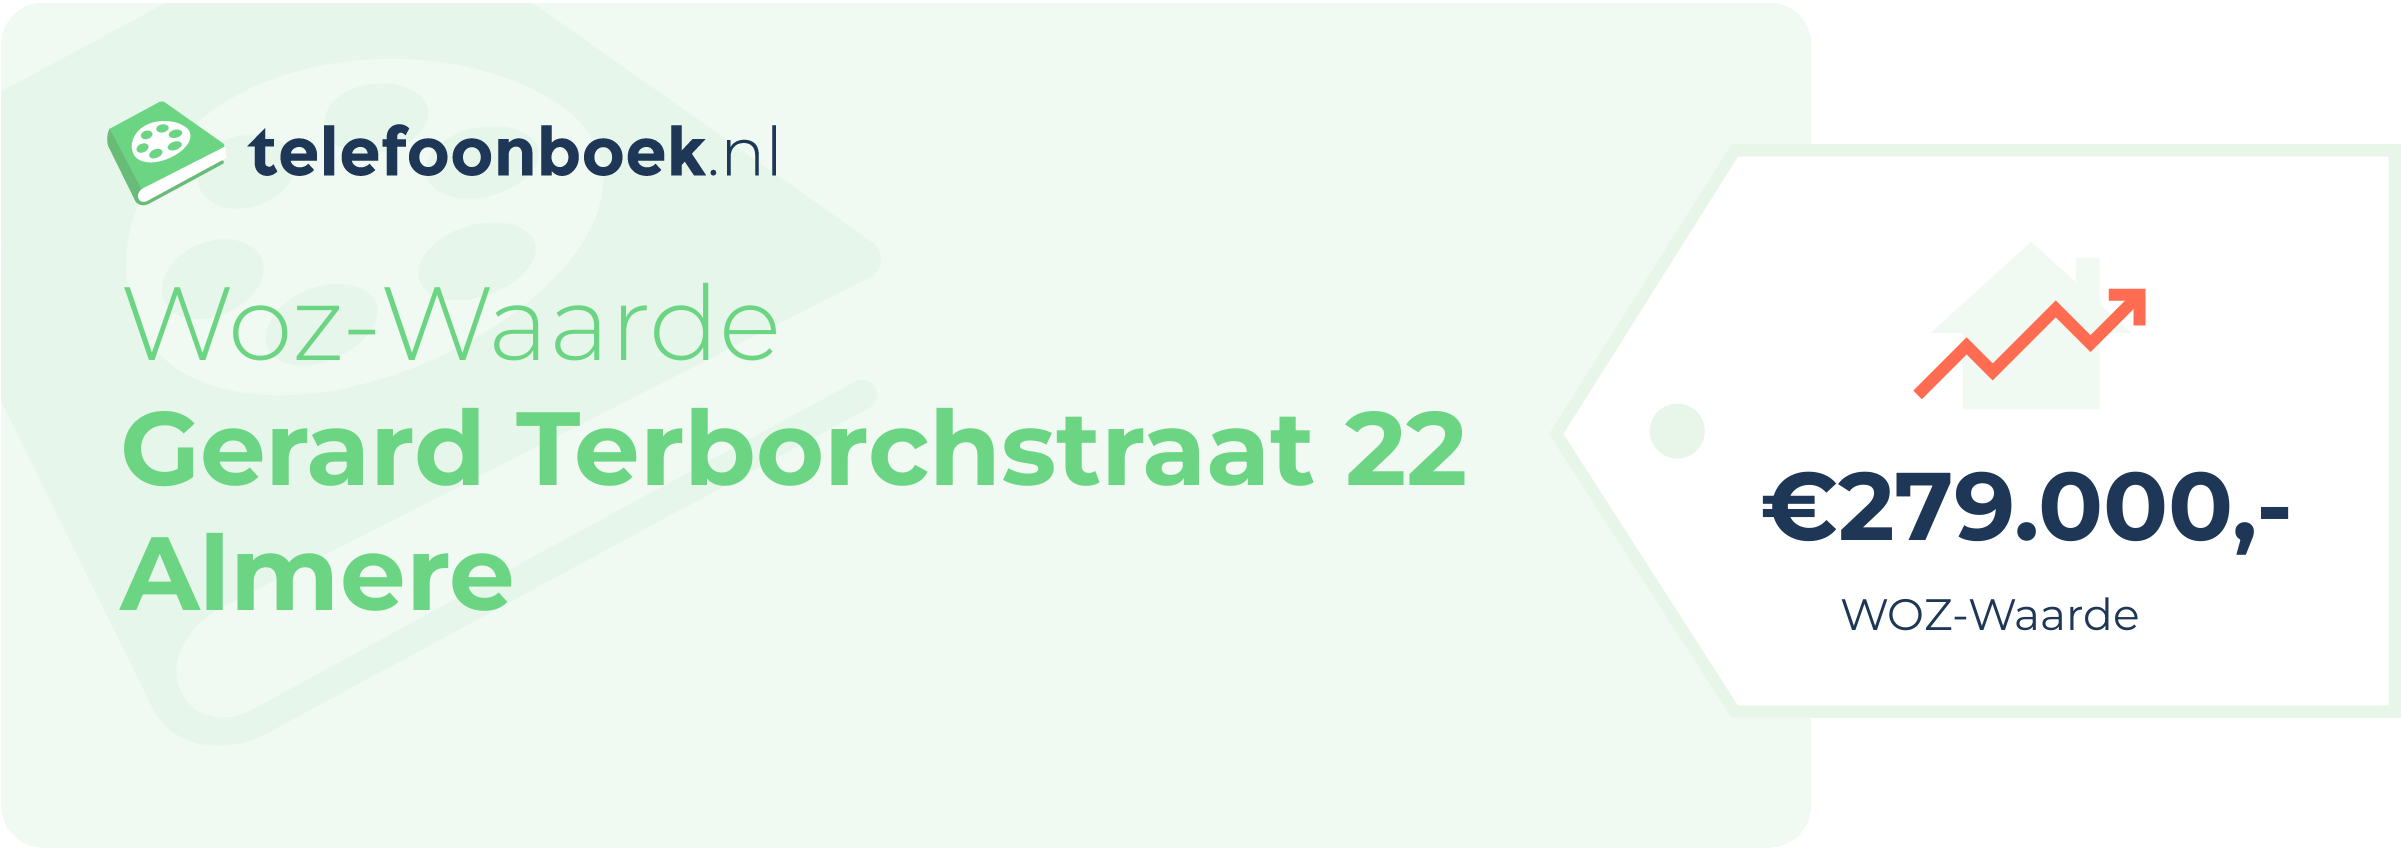 WOZ-waarde Gerard Terborchstraat 22 Almere